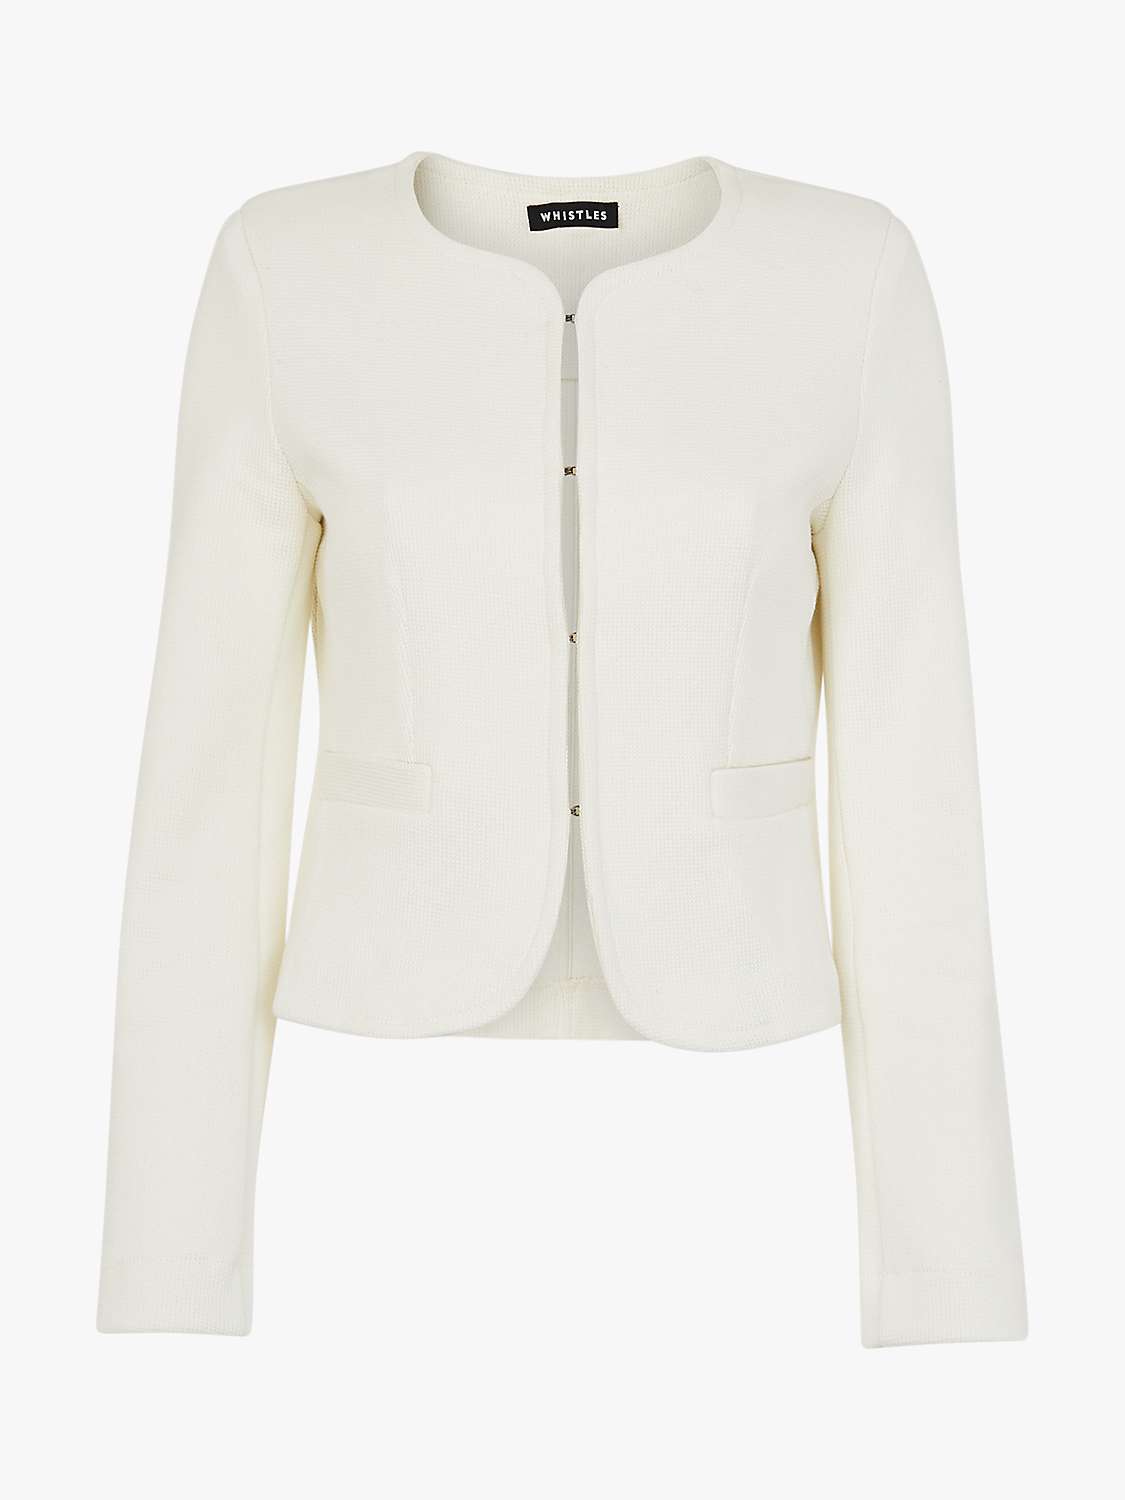 Whistles Collarless Jersey Jacket, Ivory at John Lewis & Partners